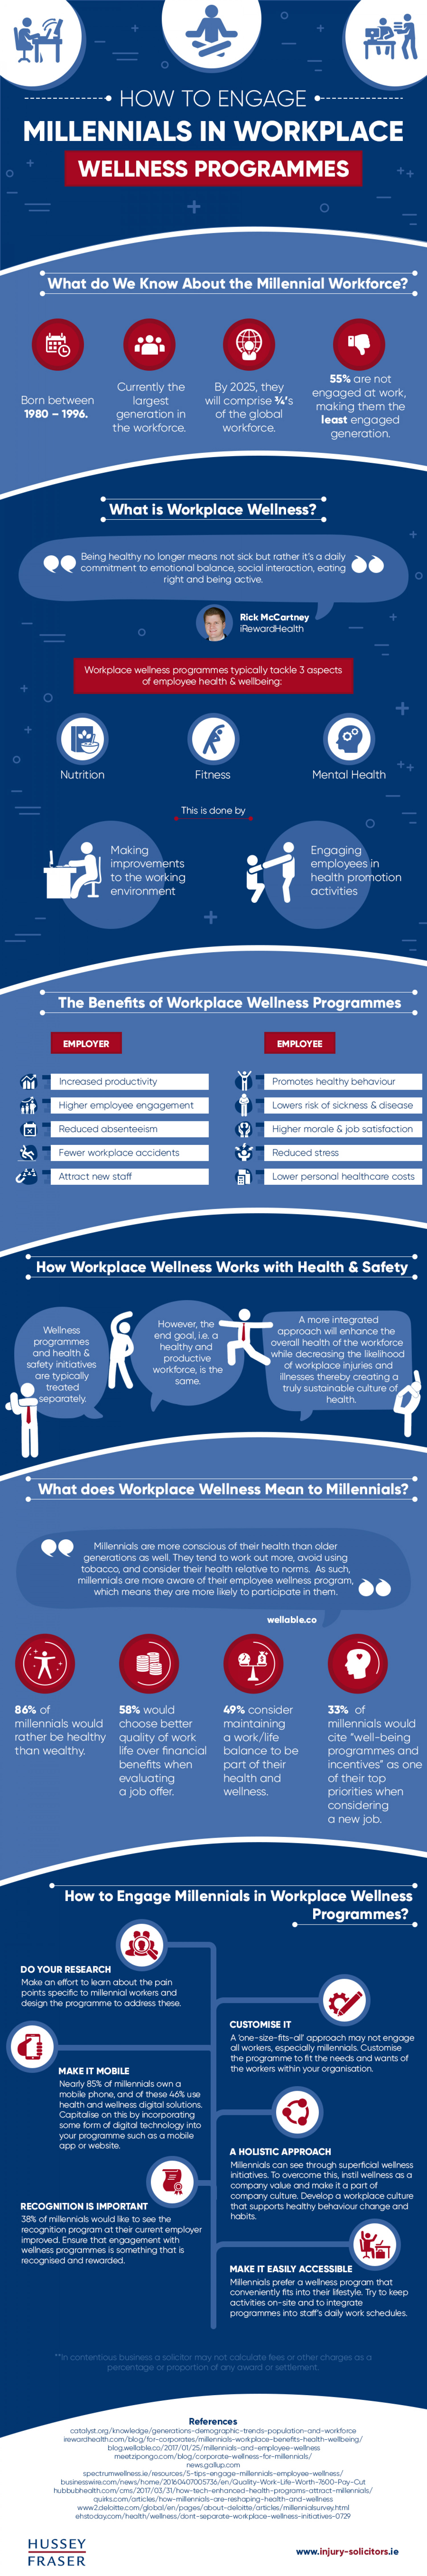 Wellness Programs, Millennials at Work